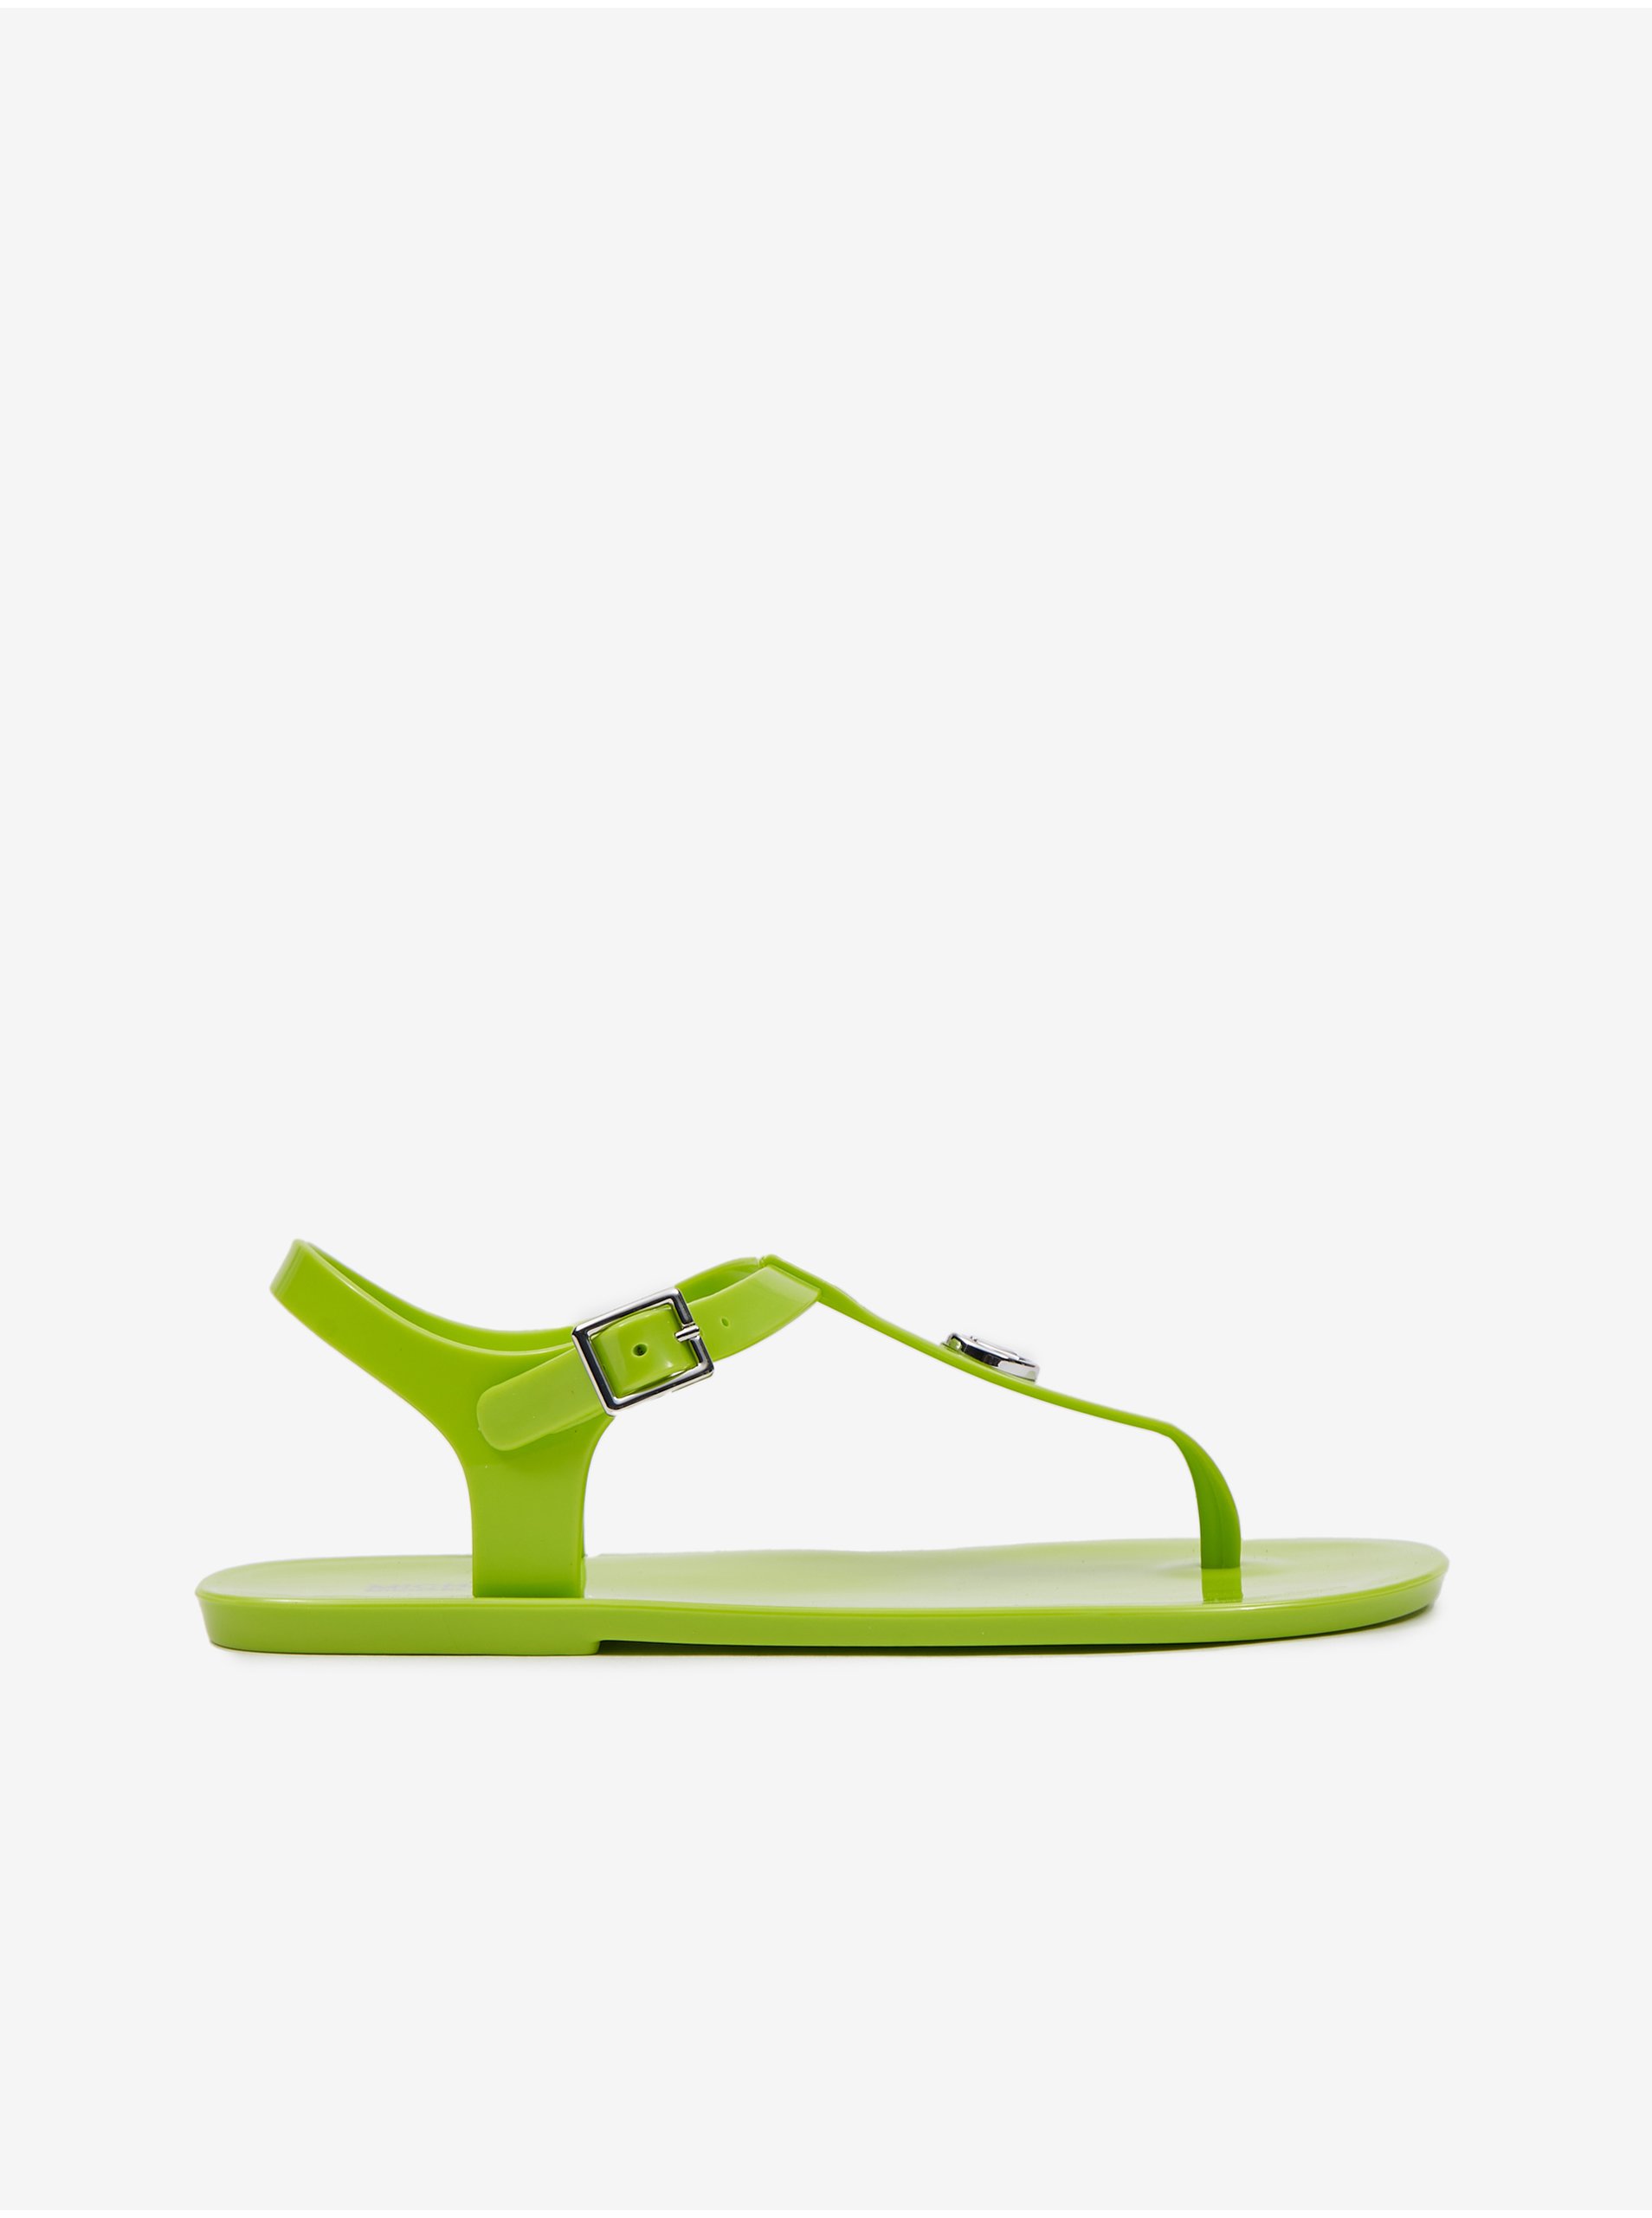 Lacno Svetlozelené dámske sandále Michael Kors Mallory Jelly